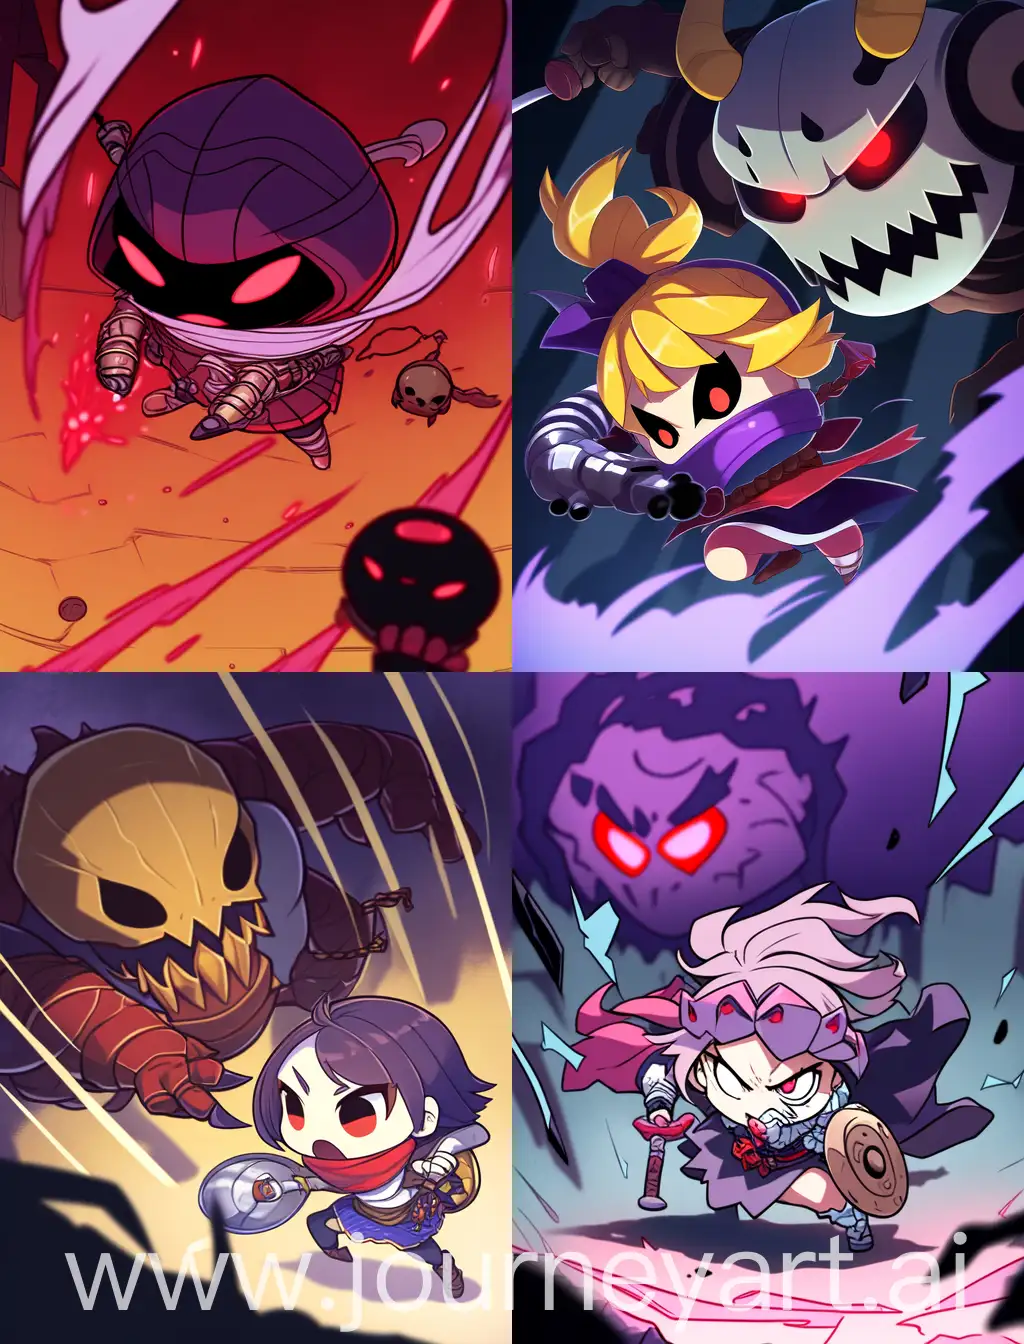 Chibi-Bandit-Battles-Monster-in-Spooky-Anime-Cartoon-Scene